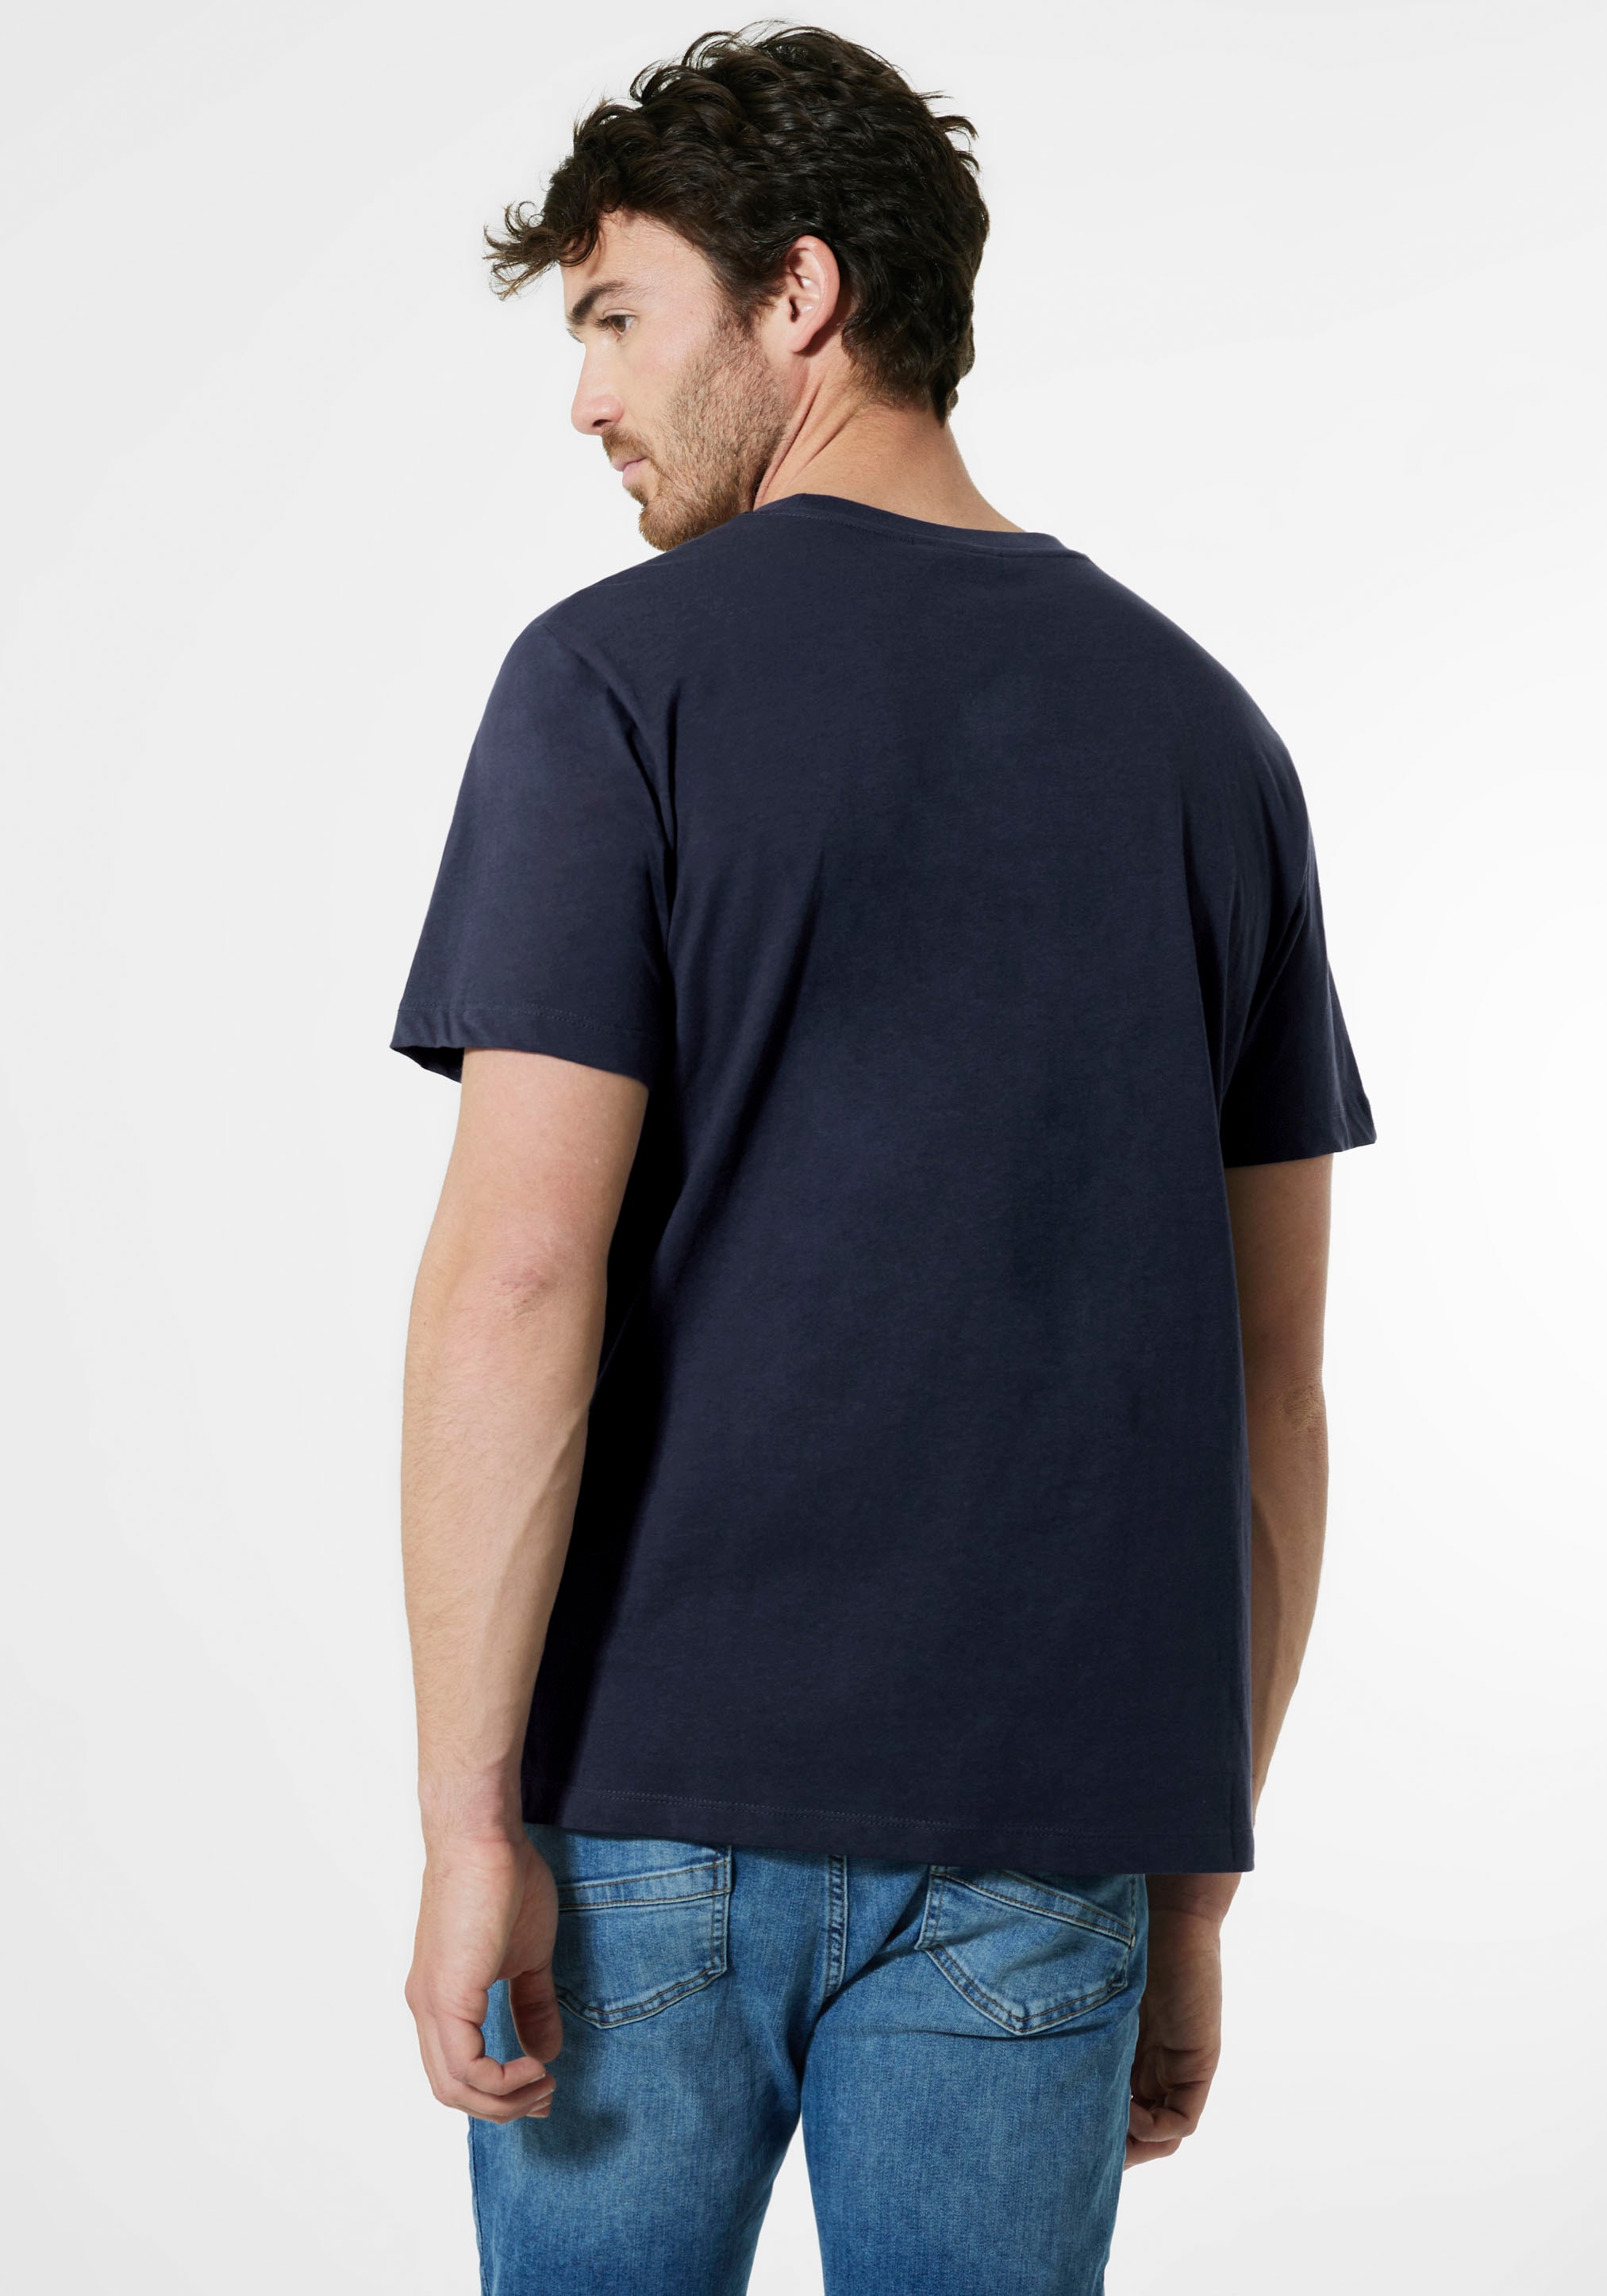 STREET ONE MEN T-Shirt, mit Label-Front-Print online bestellen bei OTTO